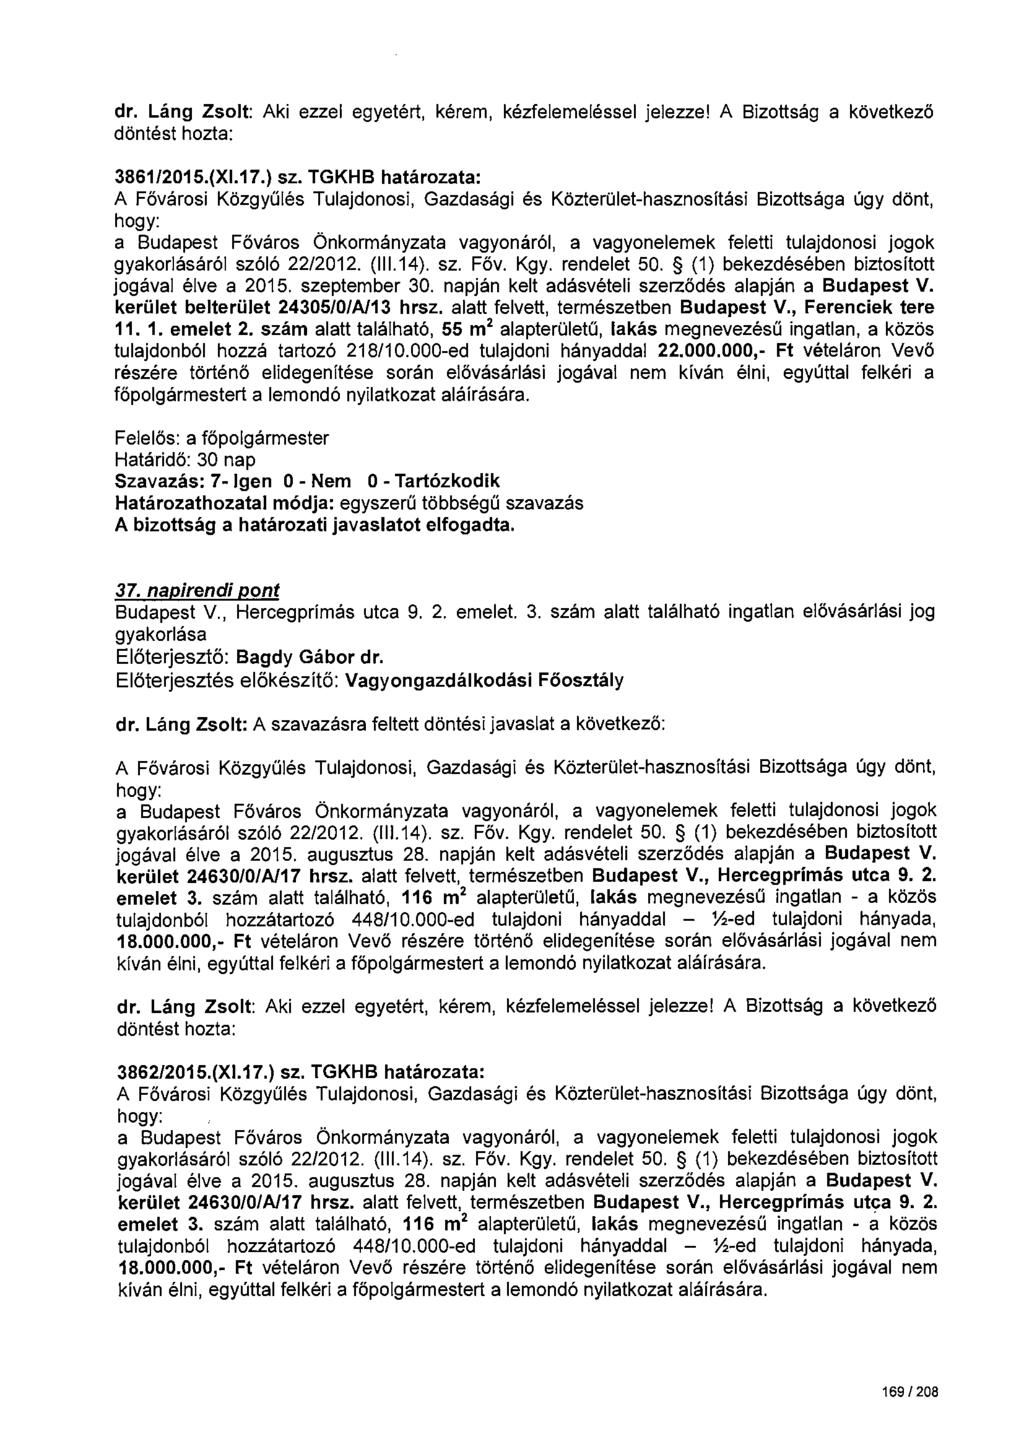 dr. Láng Zsolt: Aki ezzel egyetért, kérem, kézfelemeléssel jelezze! A Bizottság a következö 3861/2015.(Xl.17.) sz. TGKHB határozata: gyakorlásáról szóló 22/2012. (111.14). sz. Főv. Kgy. rendelet 50.